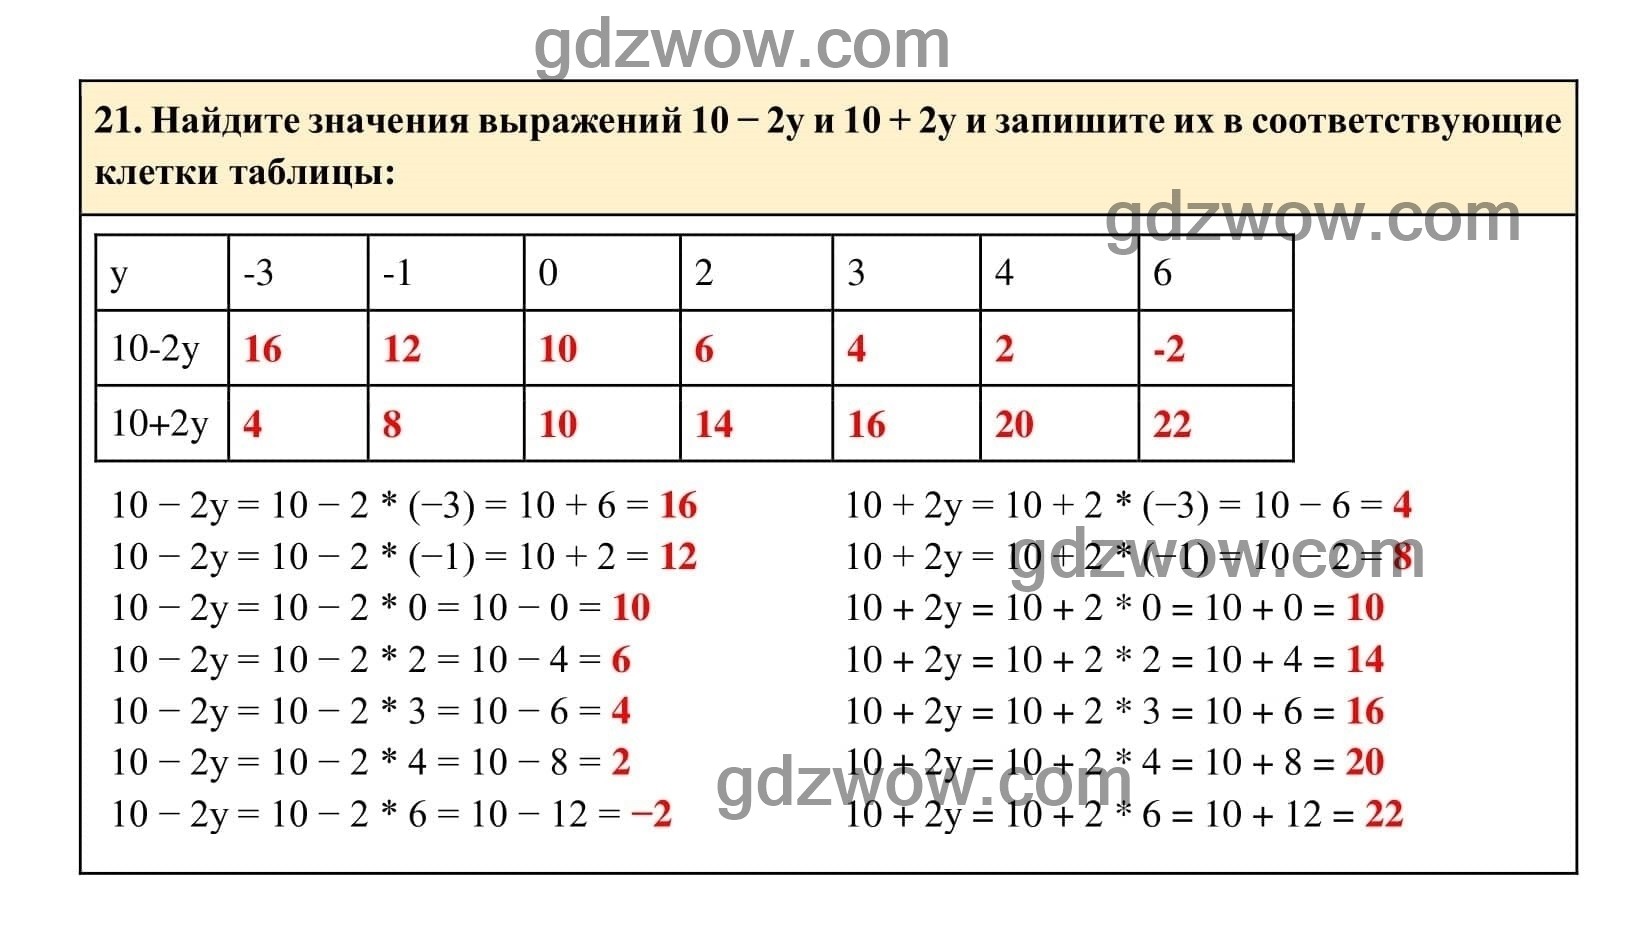 Упражнение 21 - ГДЗ по Алгебре 7 класс Учебник Макарычев (решебник) - GDZwow